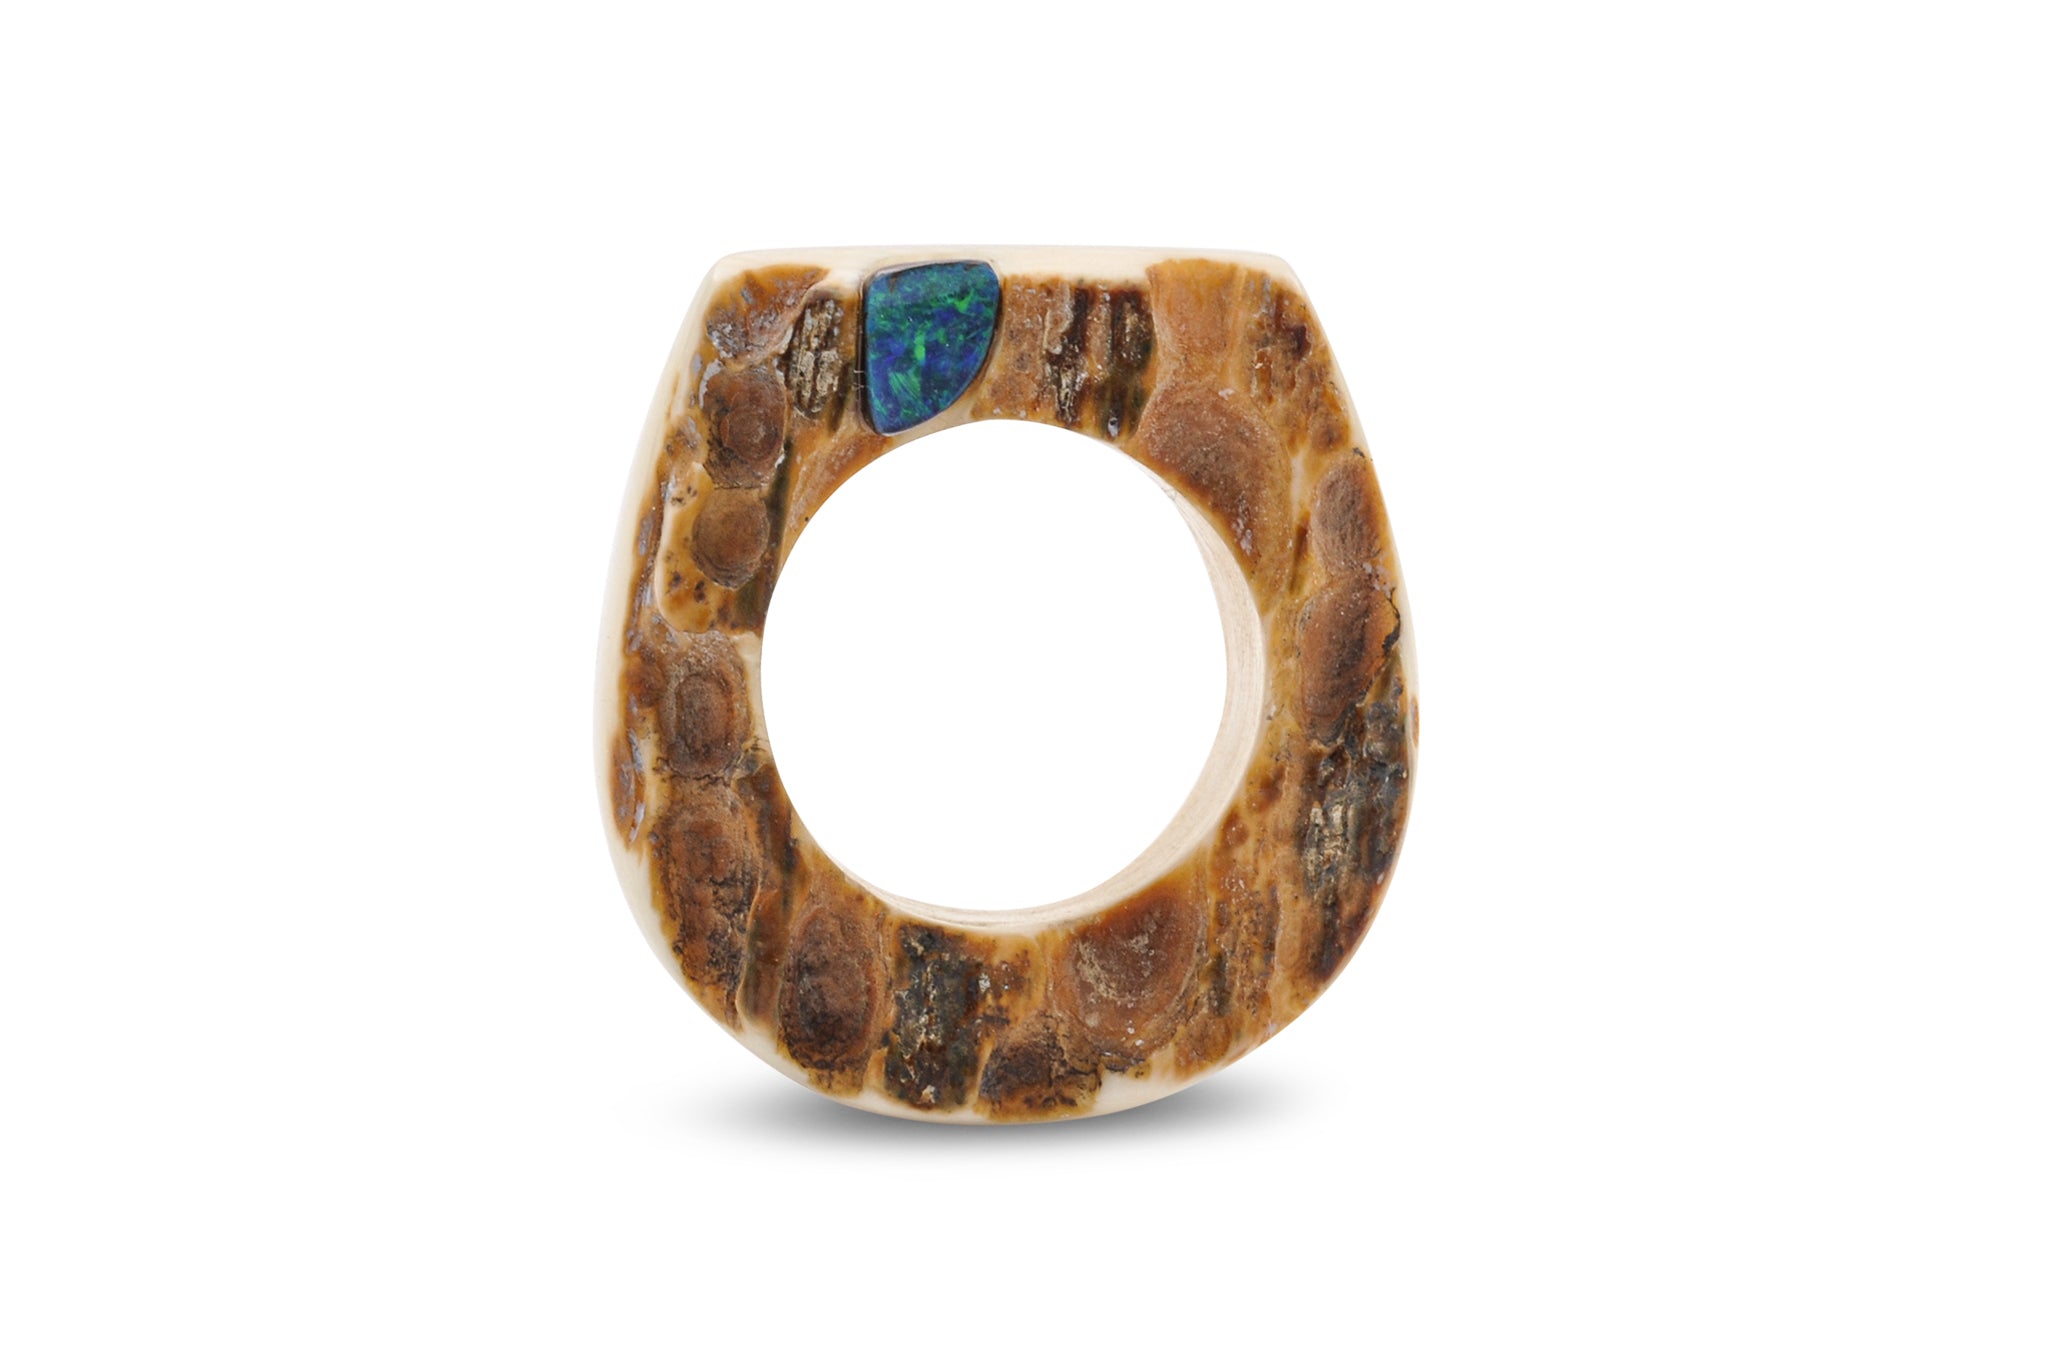 Ring aus Mammut Elfenbein, Aussenseite raue, rot-braune Rinde, in der linken oberen Ecke ist ein kleiner, wunderschön blau-grün schillernder Opal eingearbeitet